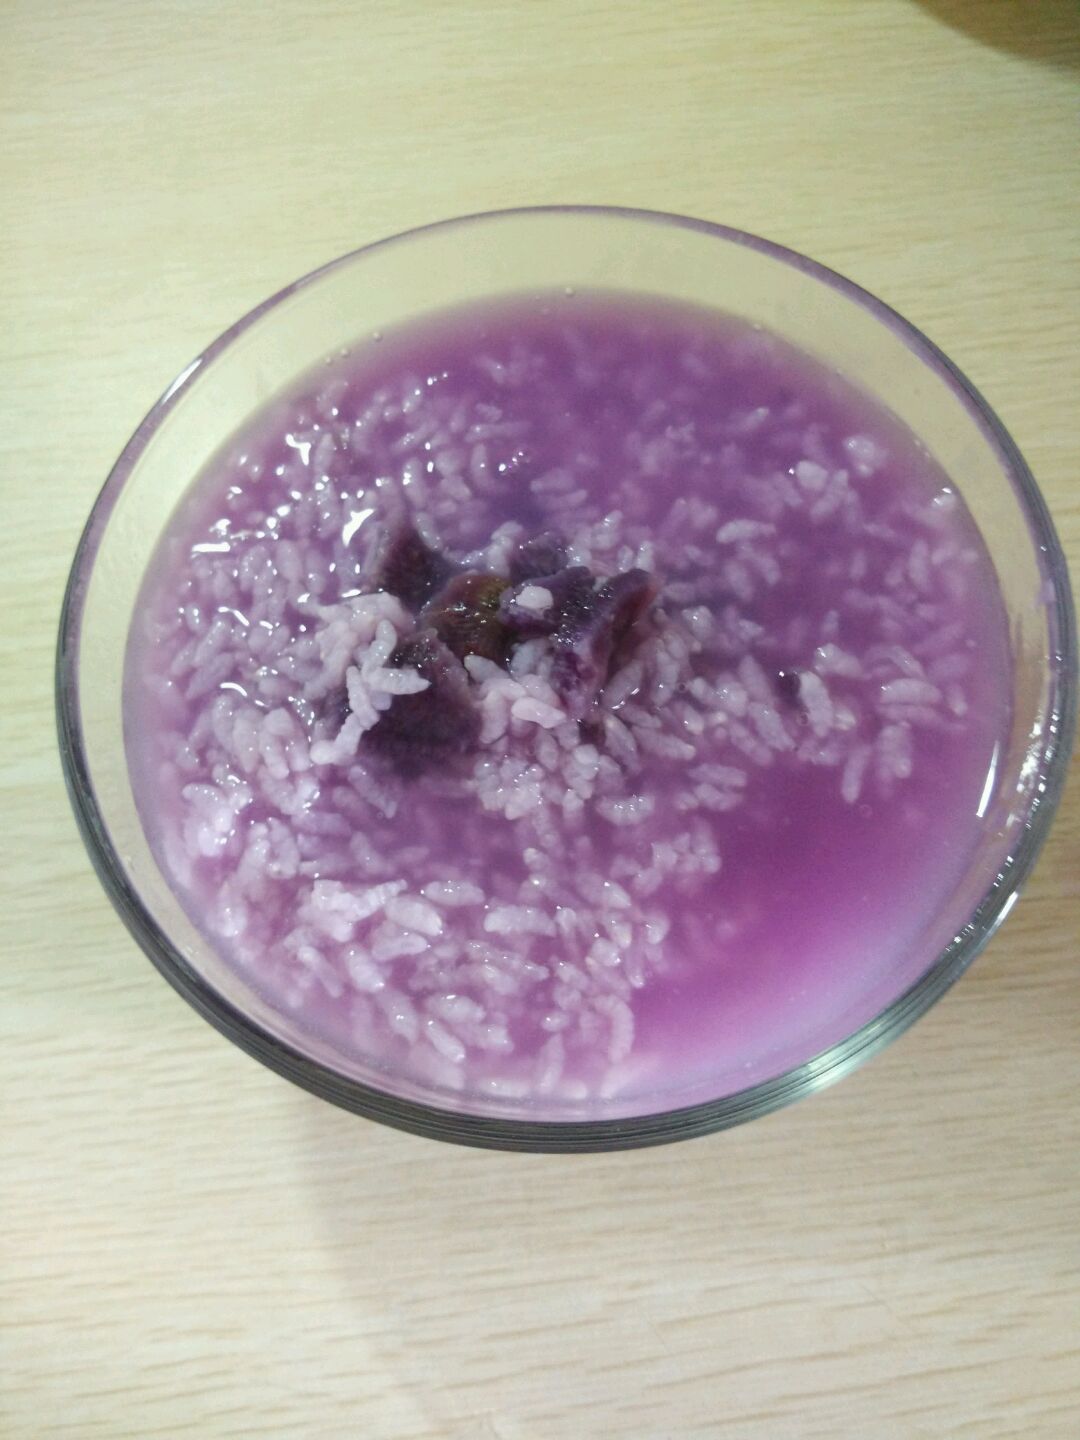 紫薯燕麦粥,紫薯燕麦粥的家常做法 - 美食杰紫薯燕麦粥做法大全